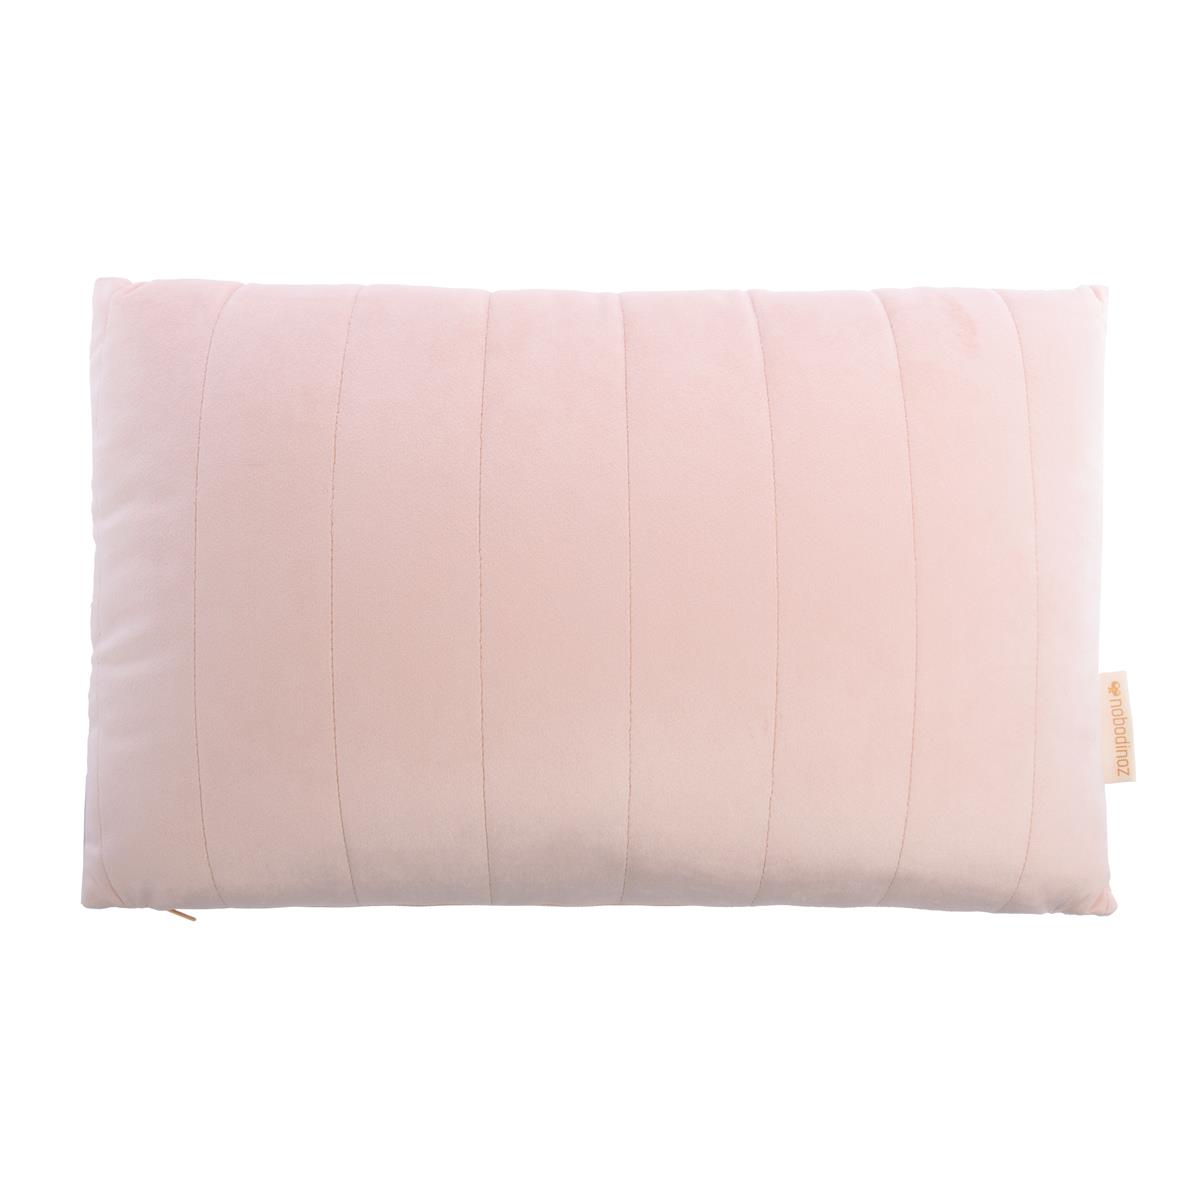 Savanna-akamba-velvet-cushion-bloom-pink-nobodinoz-€29.95